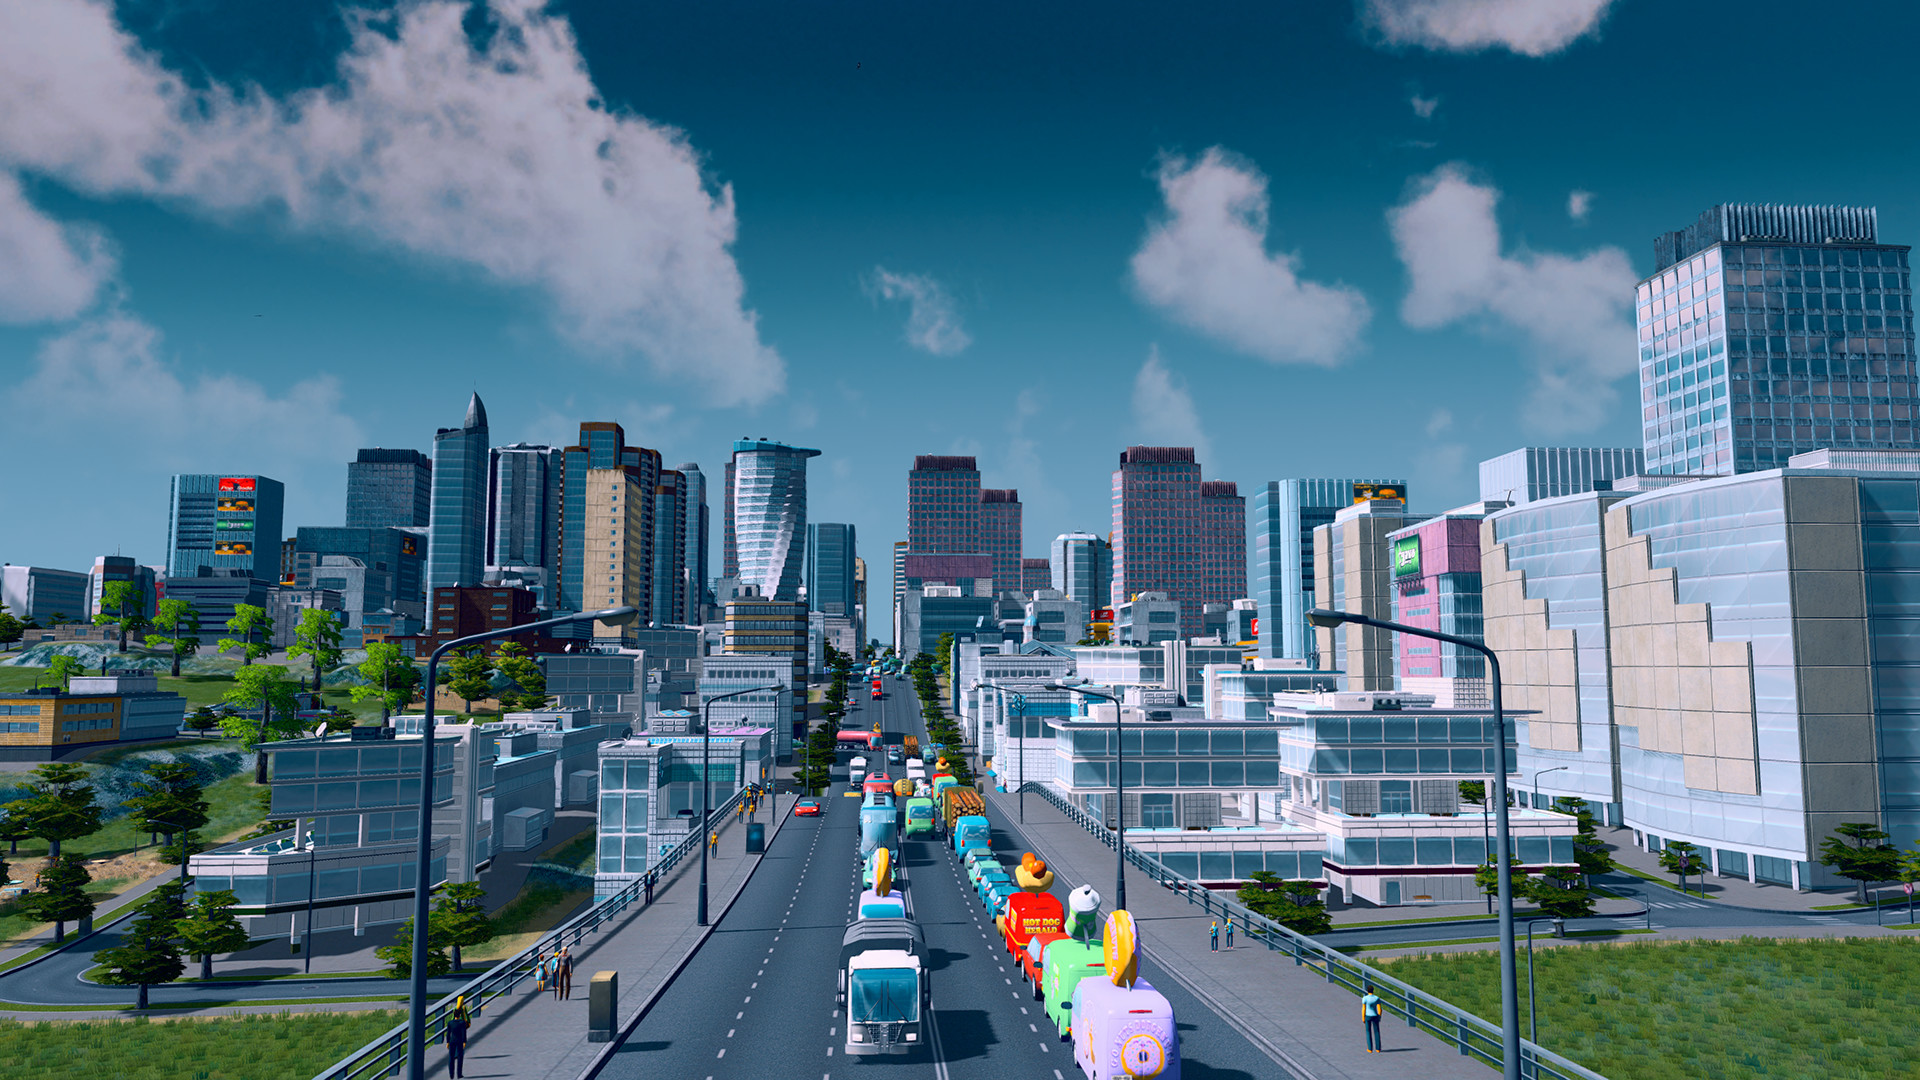 画像集/都市開発シミュレーションゲーム「Cities: Skylines」の発売日が2015年3月10日に決定。街づくりの雰囲気が確認できる